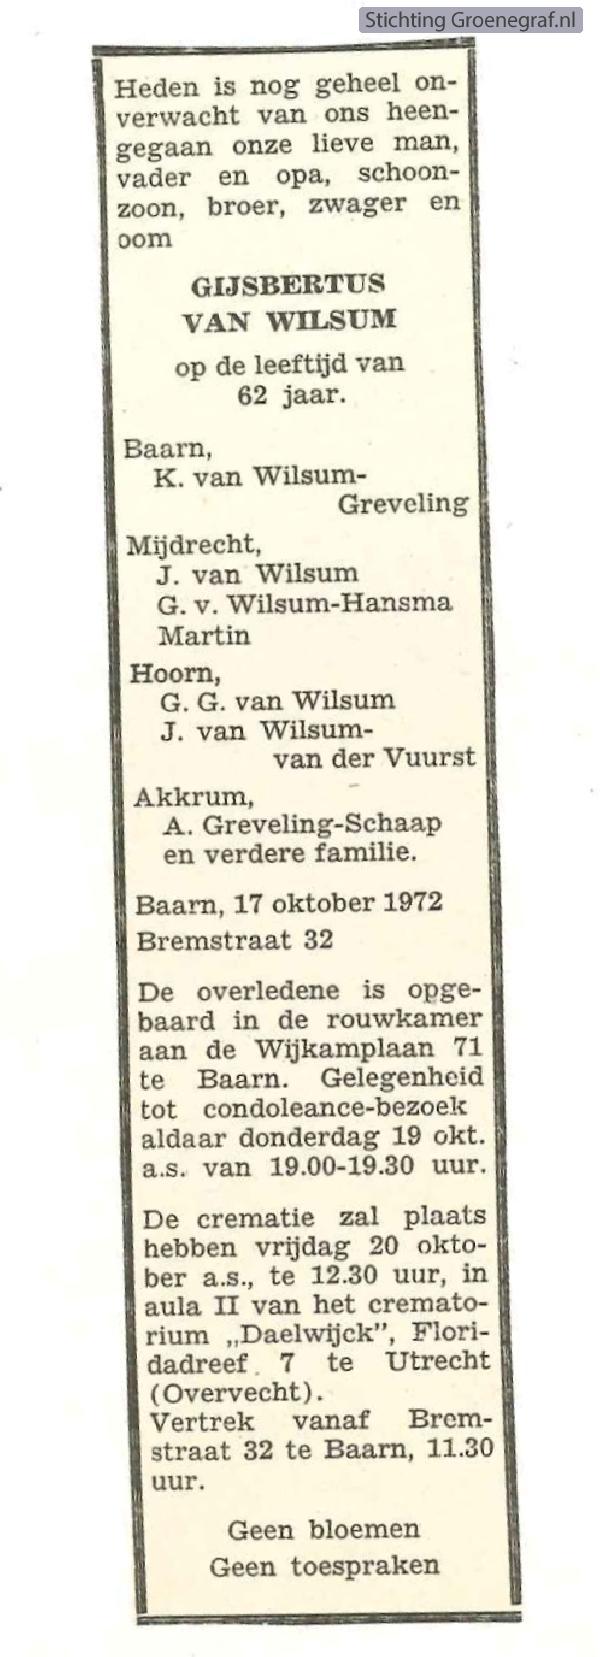 Overlijdensscan Gijsbertus van Wilsum